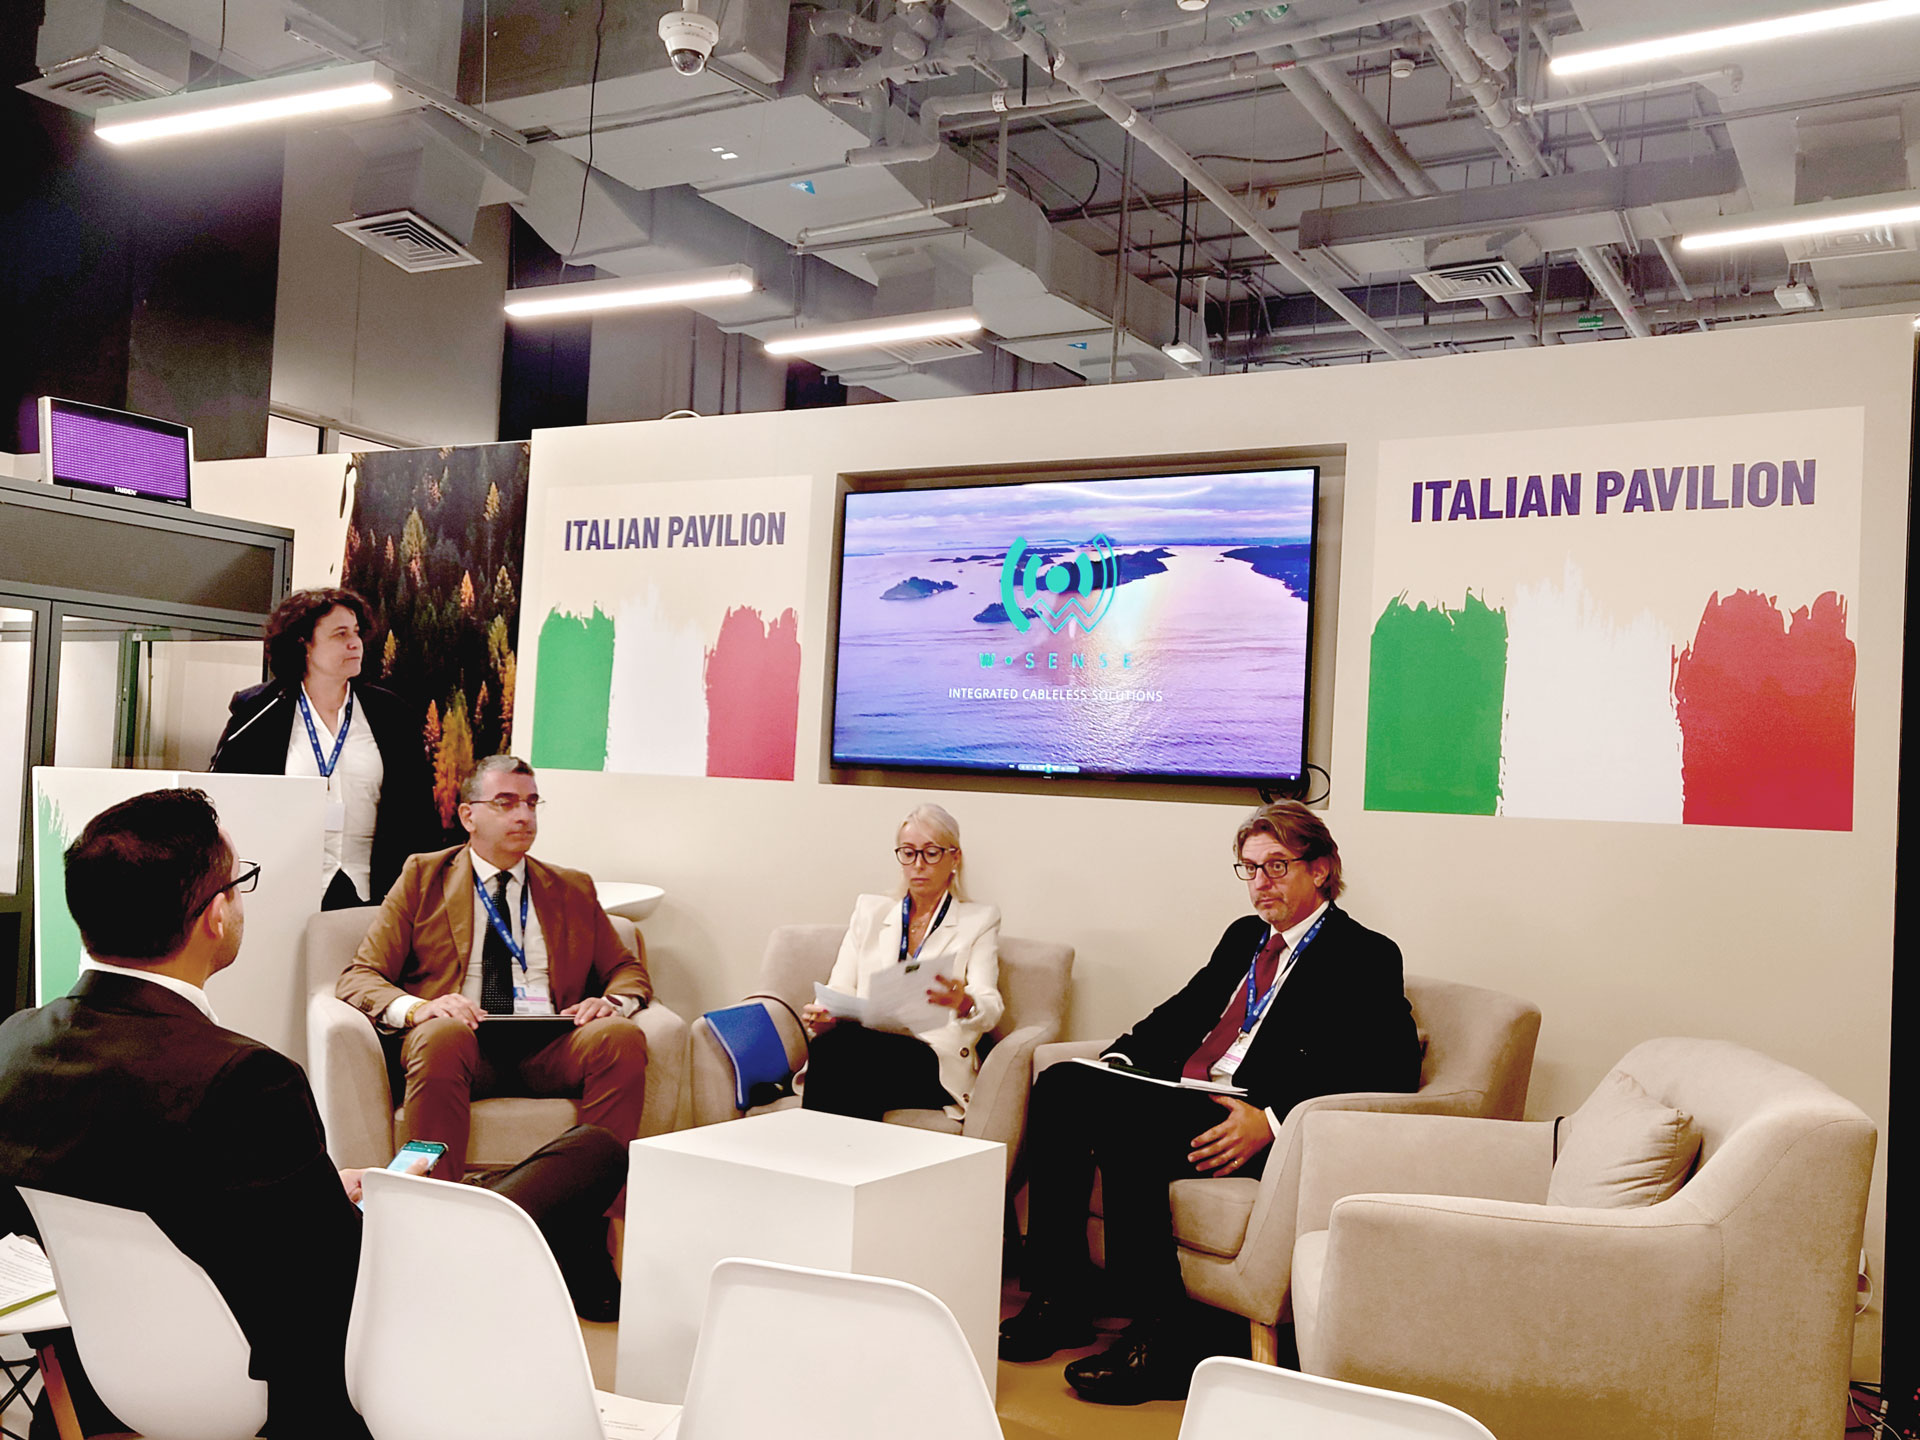 Wsense joined the Italian Pavillion @COP28 in Dubai